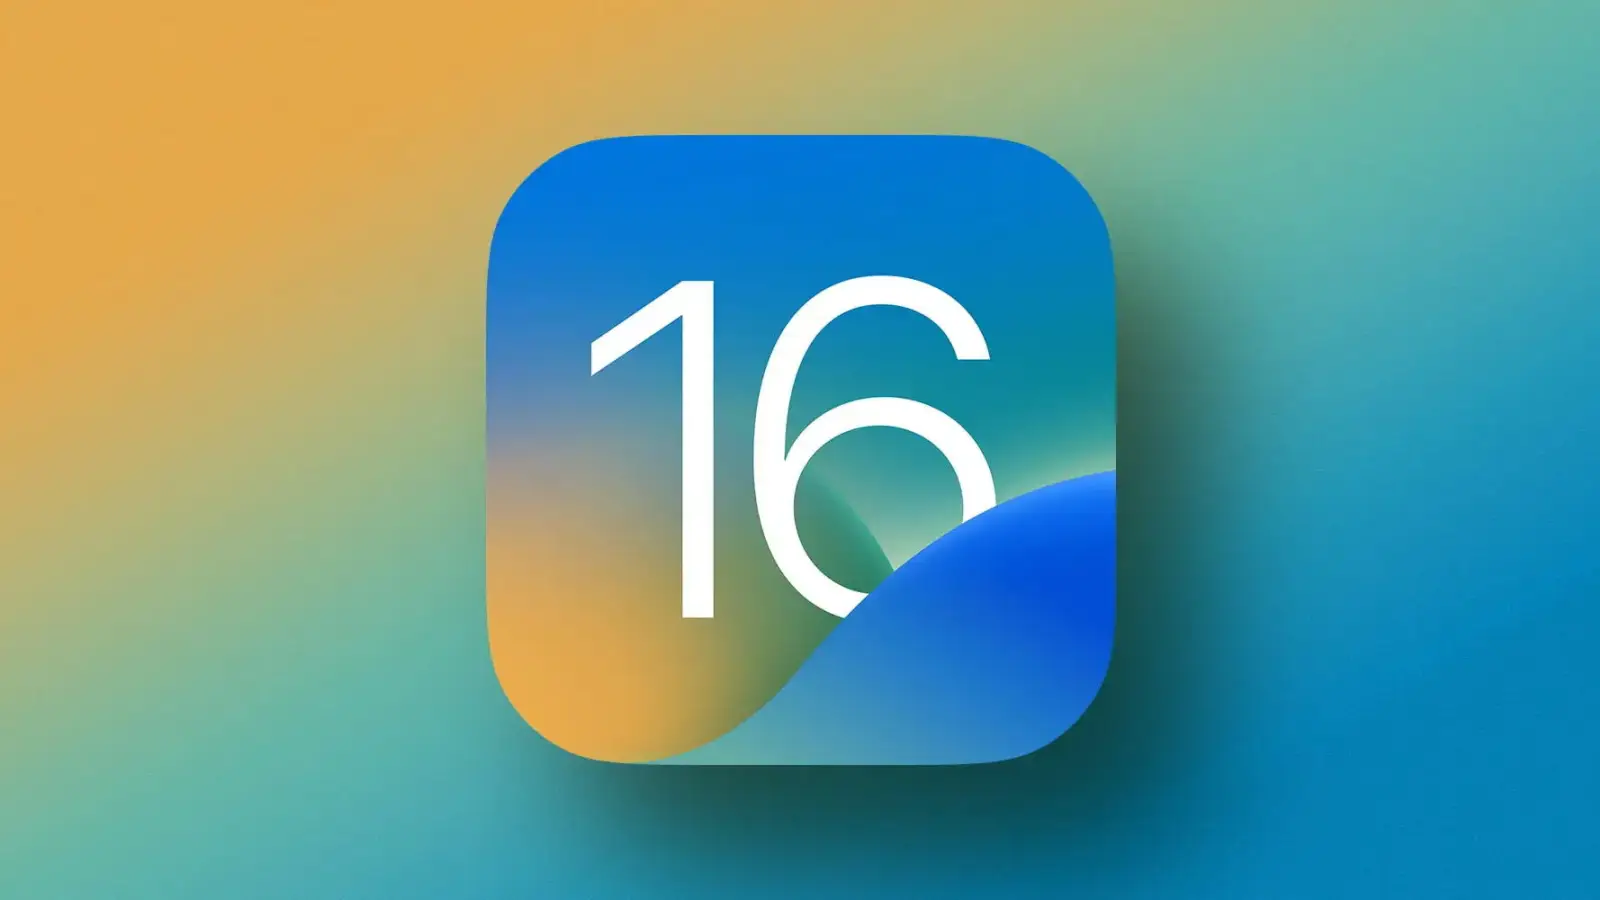 iOS 16 Lansat Iata Lista Noutatilor iPhone